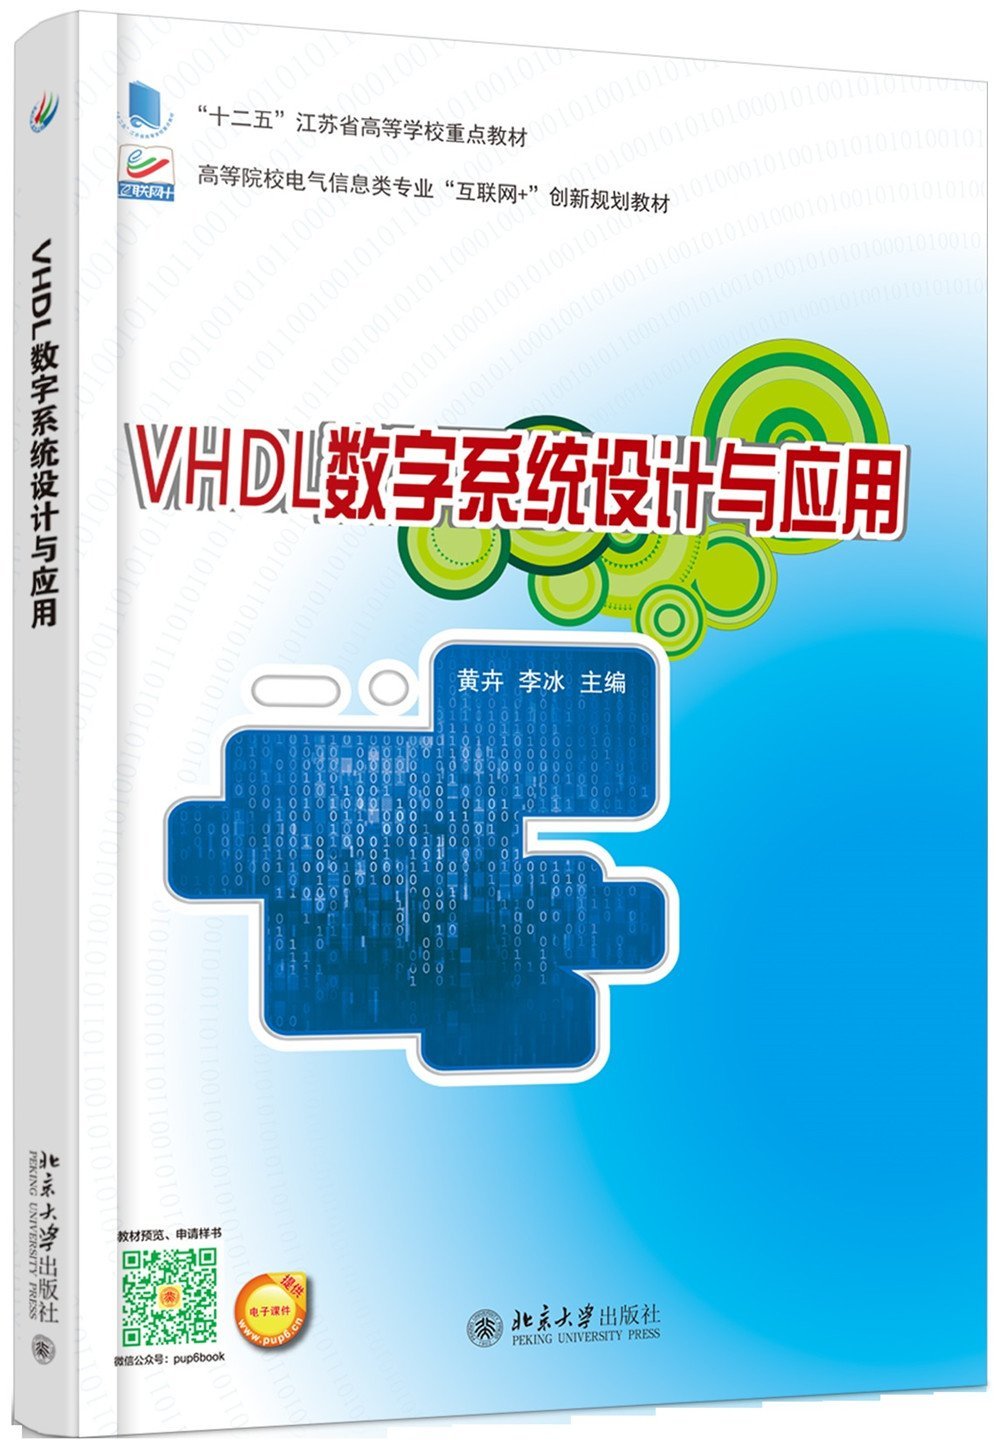 VHDL數字系統設計與應用